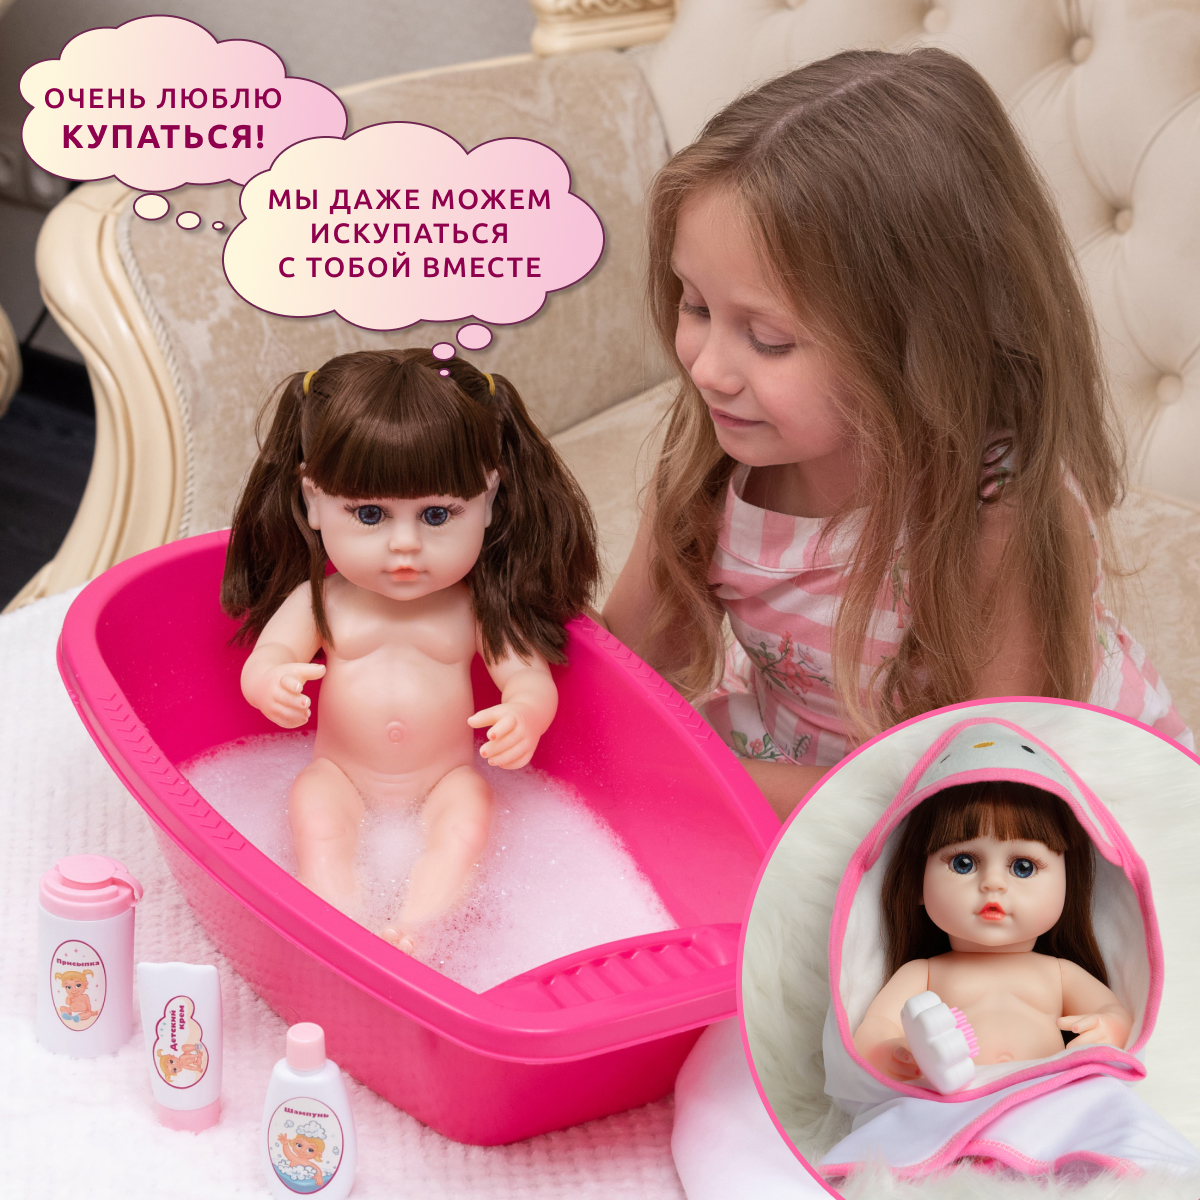 Кукла Реборн QA BABY Кэндис девочка интерактивная Пупс набор игрушки для ванной для девочки 38 см 3811 - фото 4